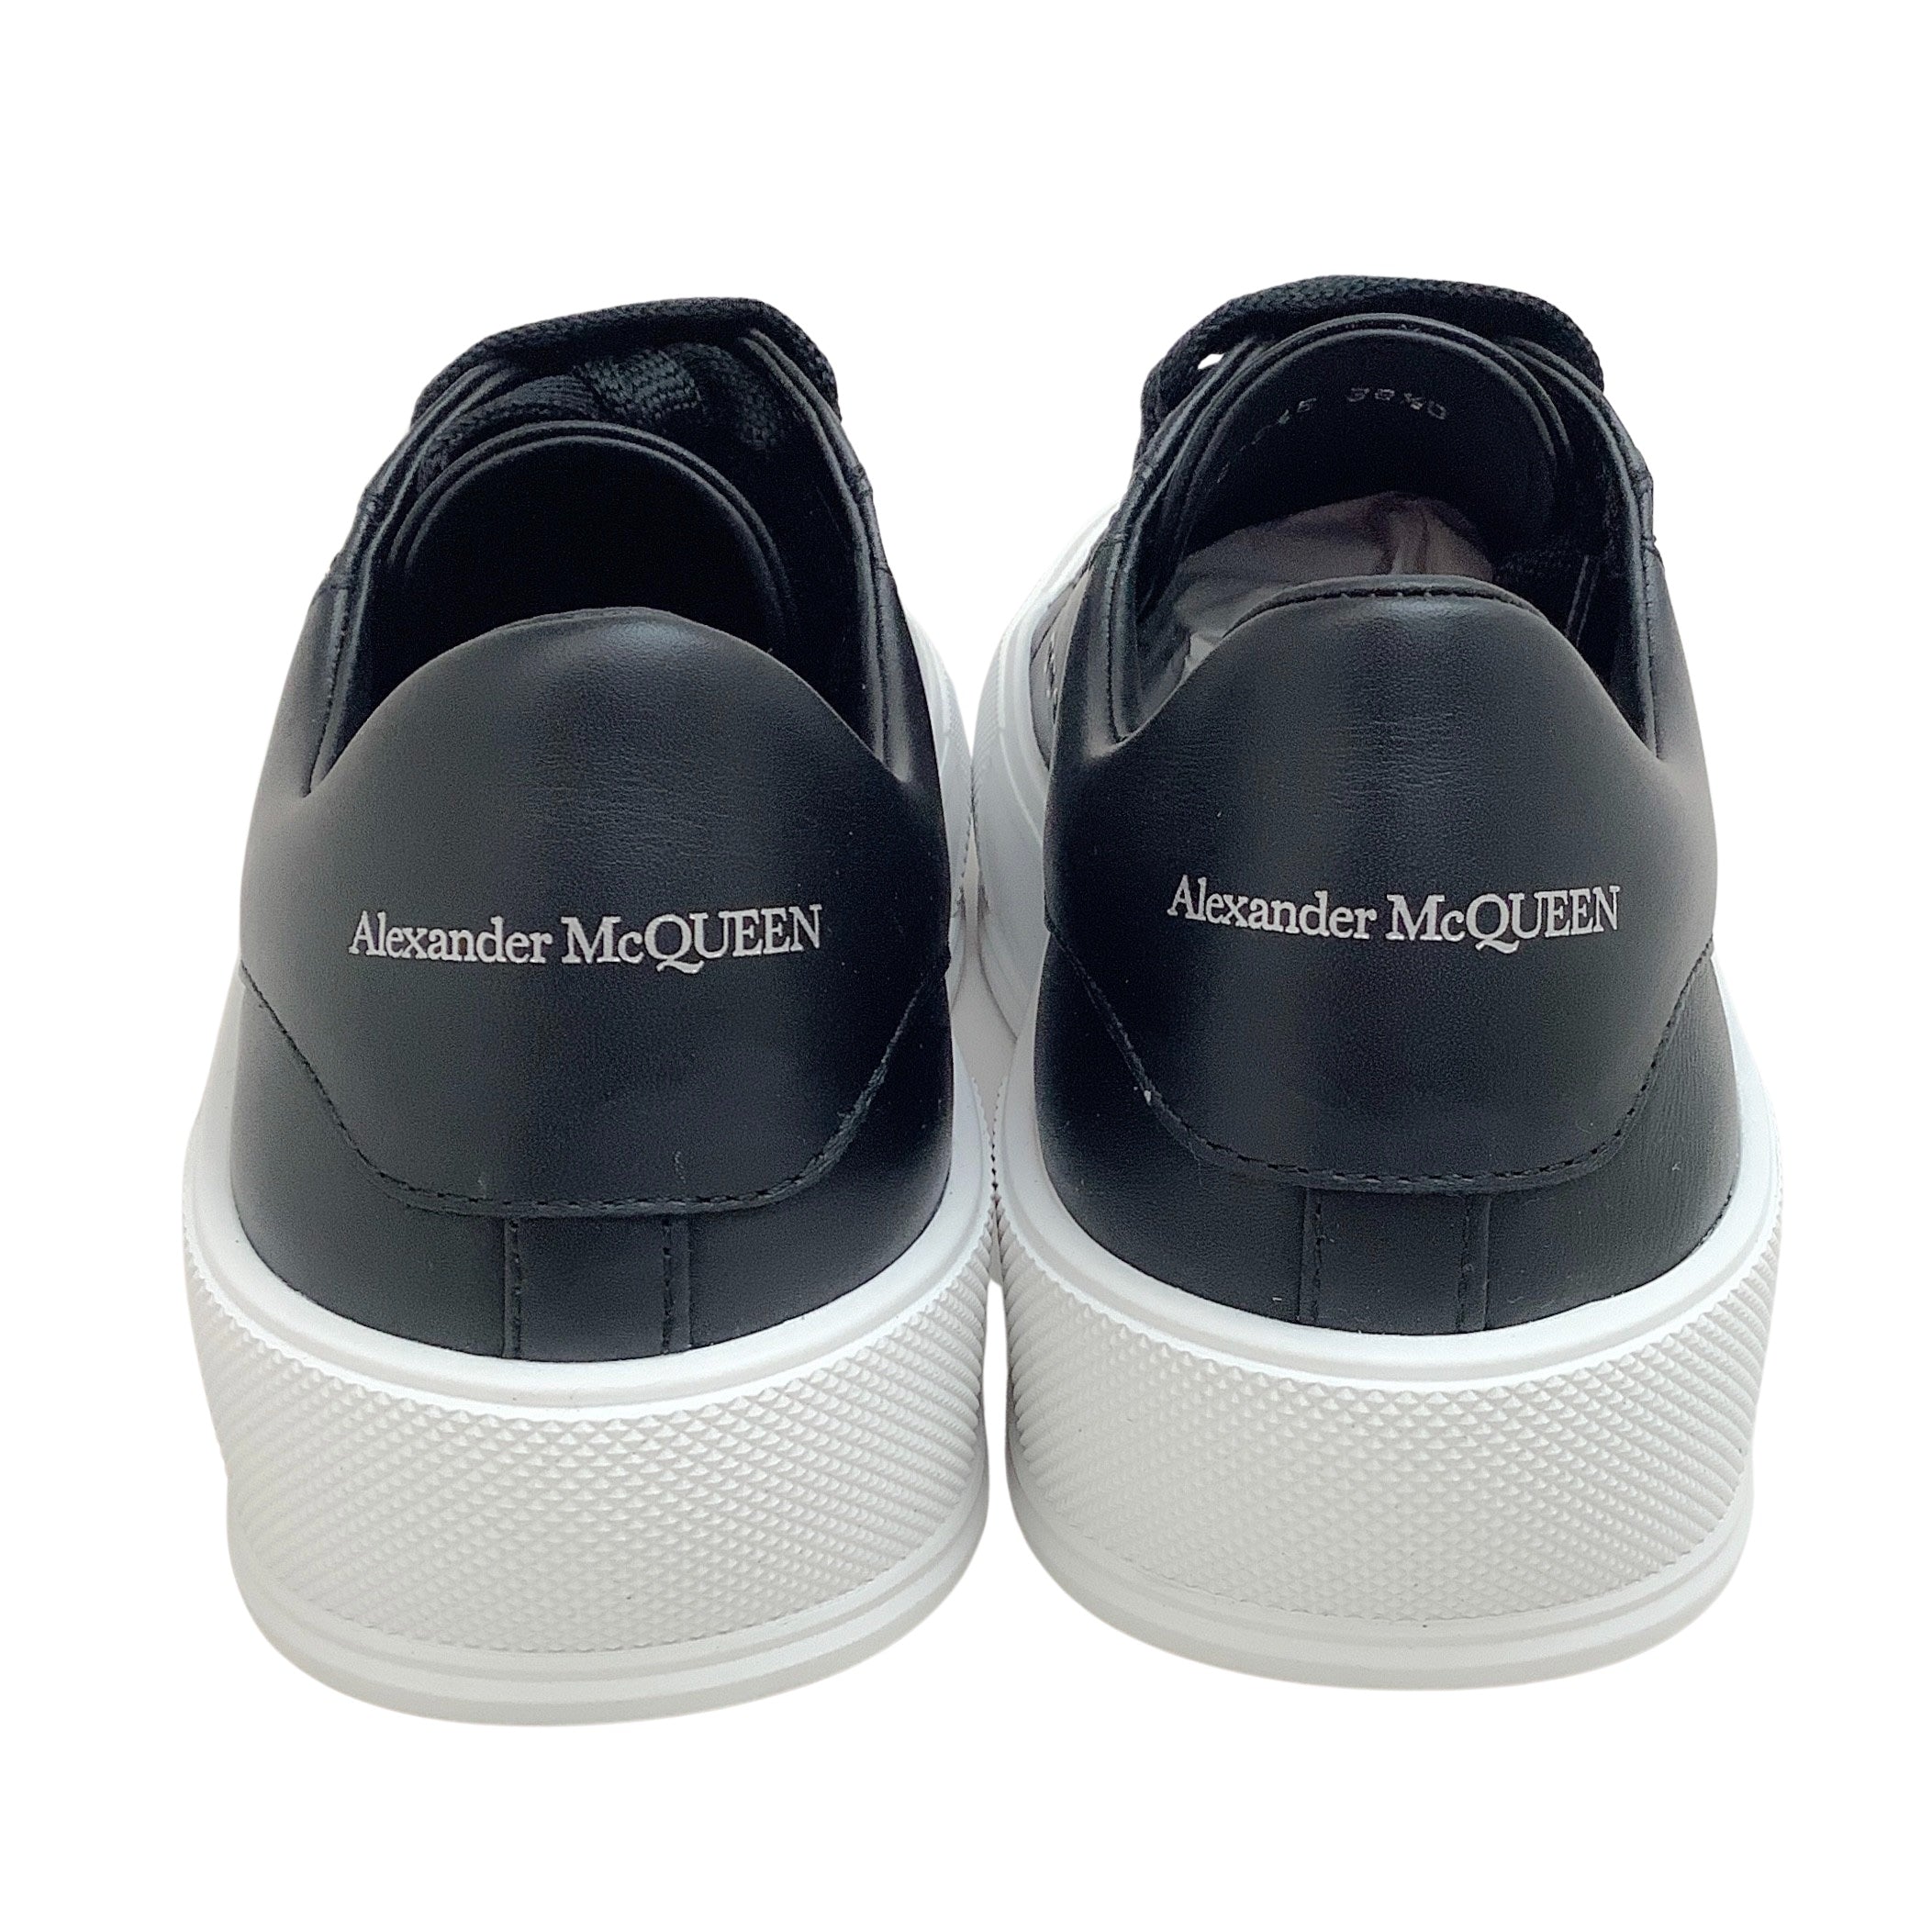 Alexander McQueen Black Leather Low Top Deck Sneakers